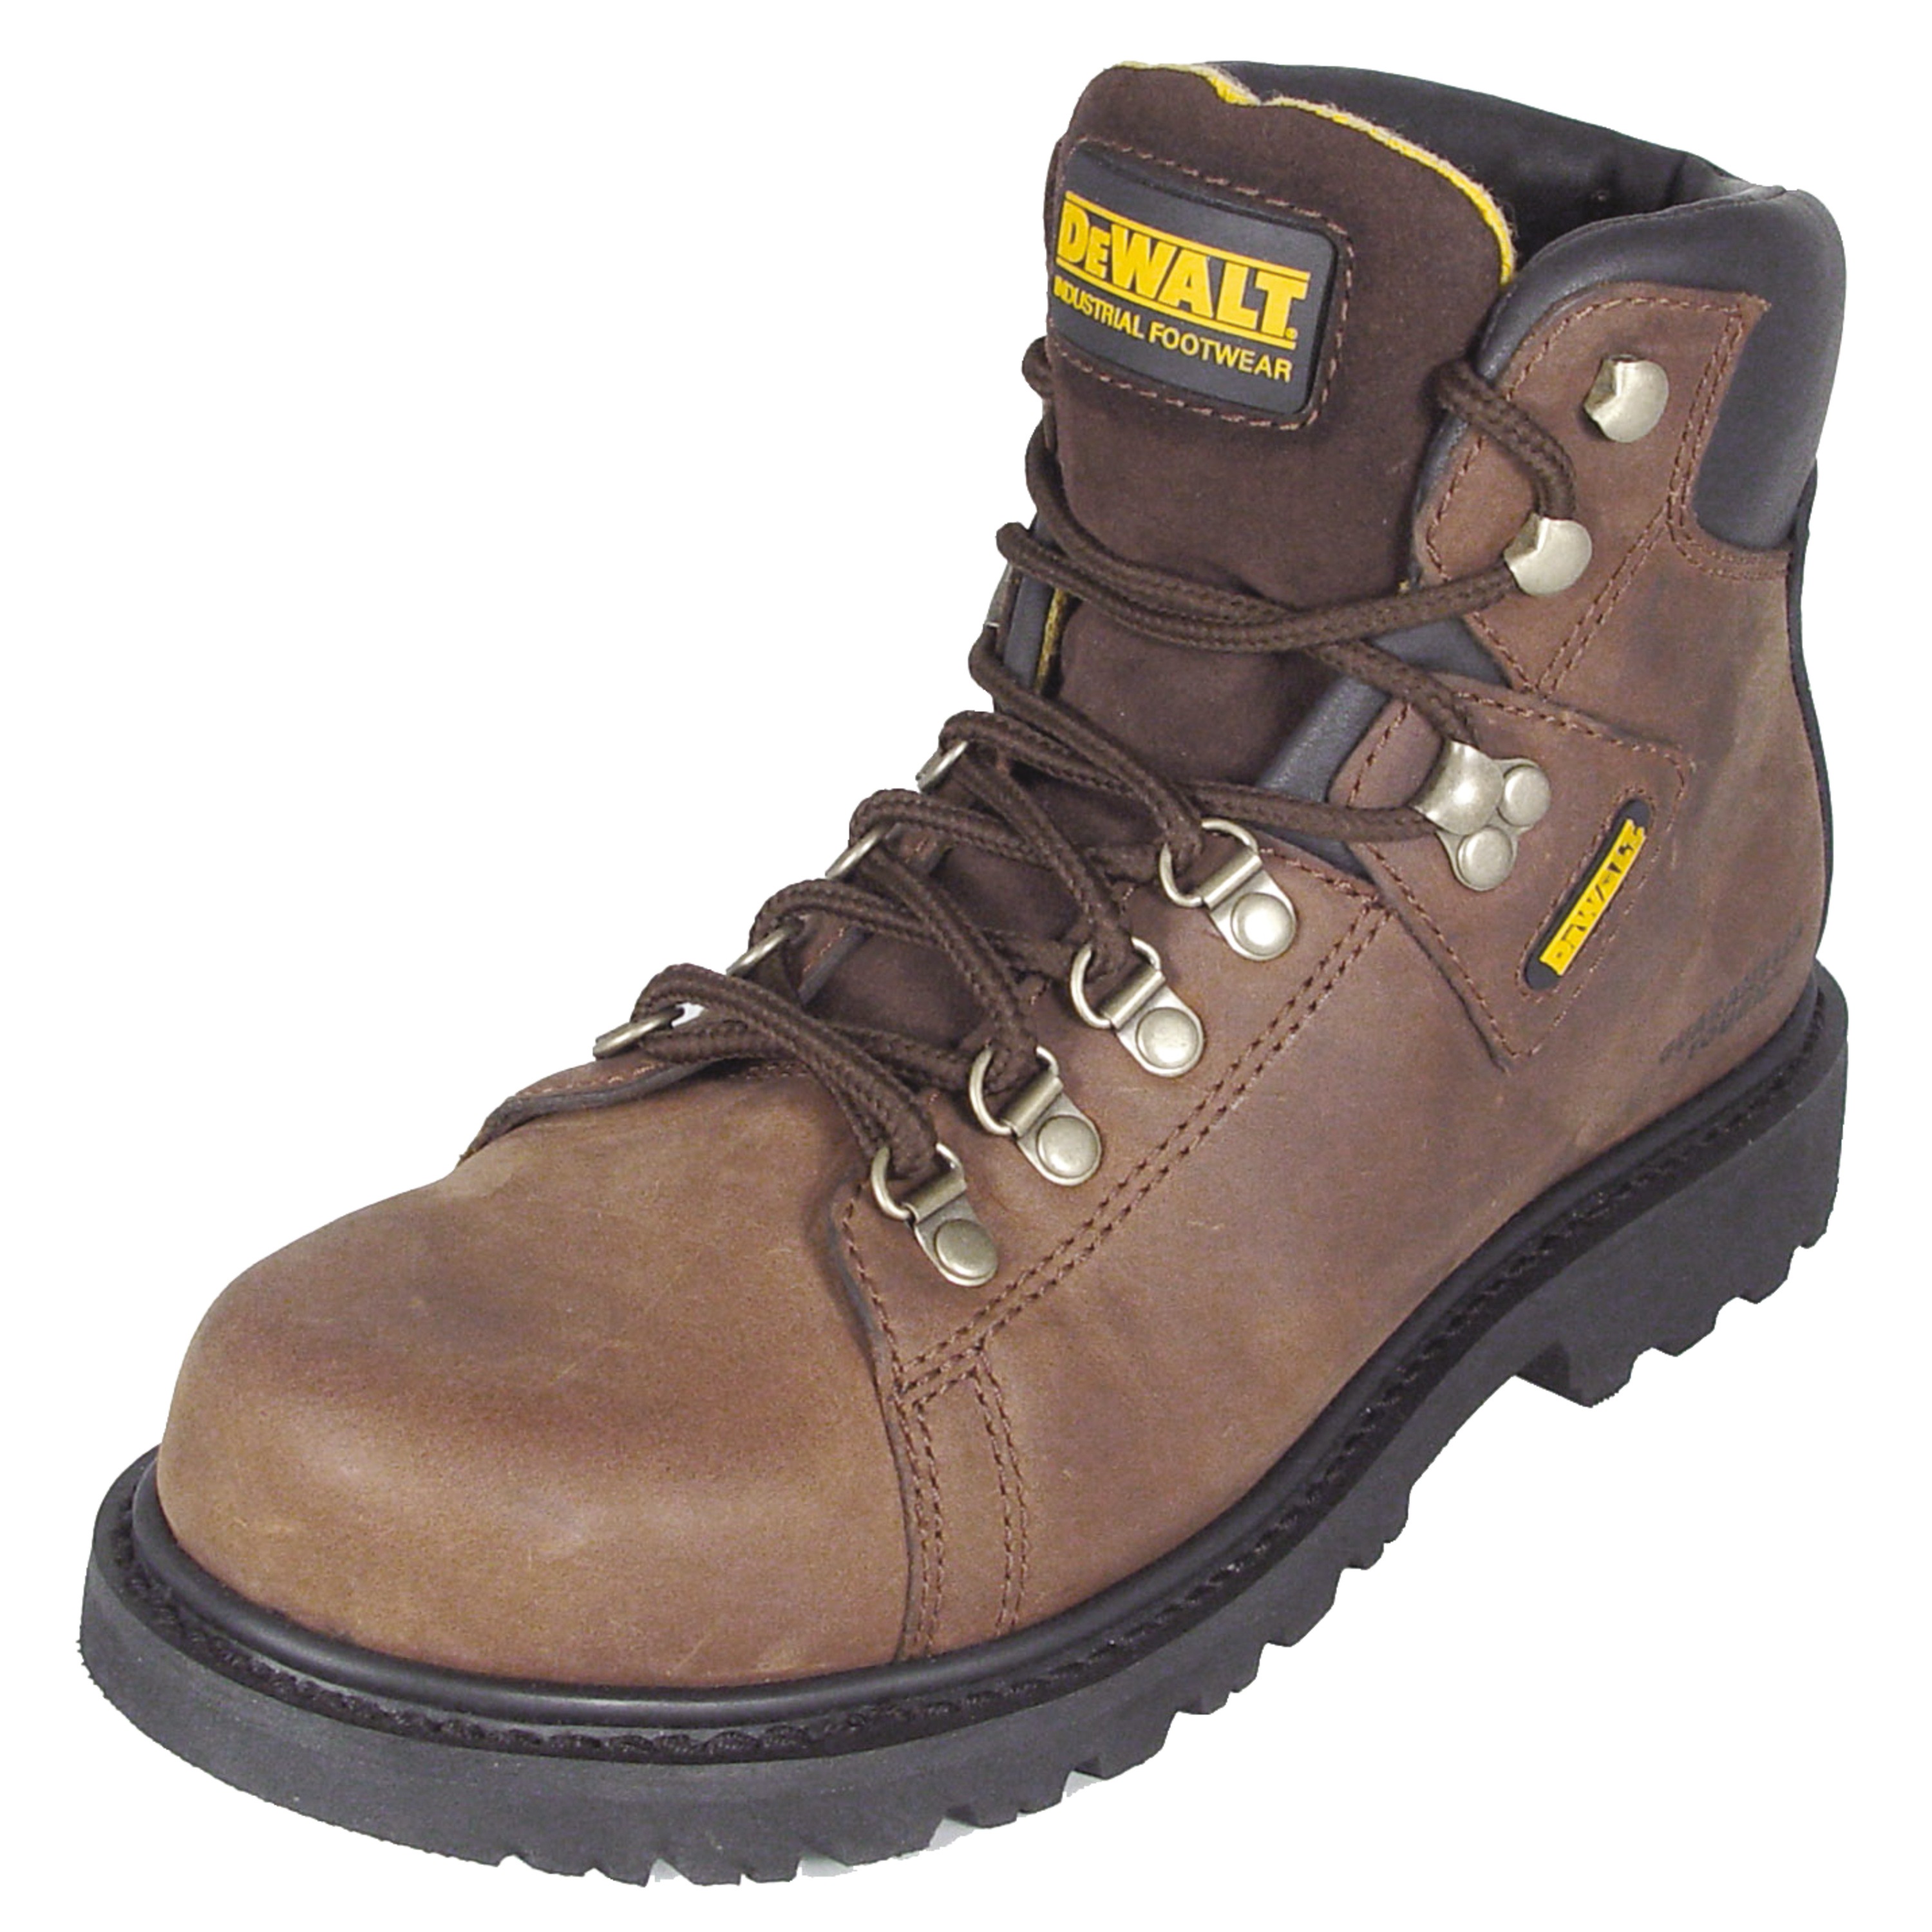 heavy duty steel toe work boots